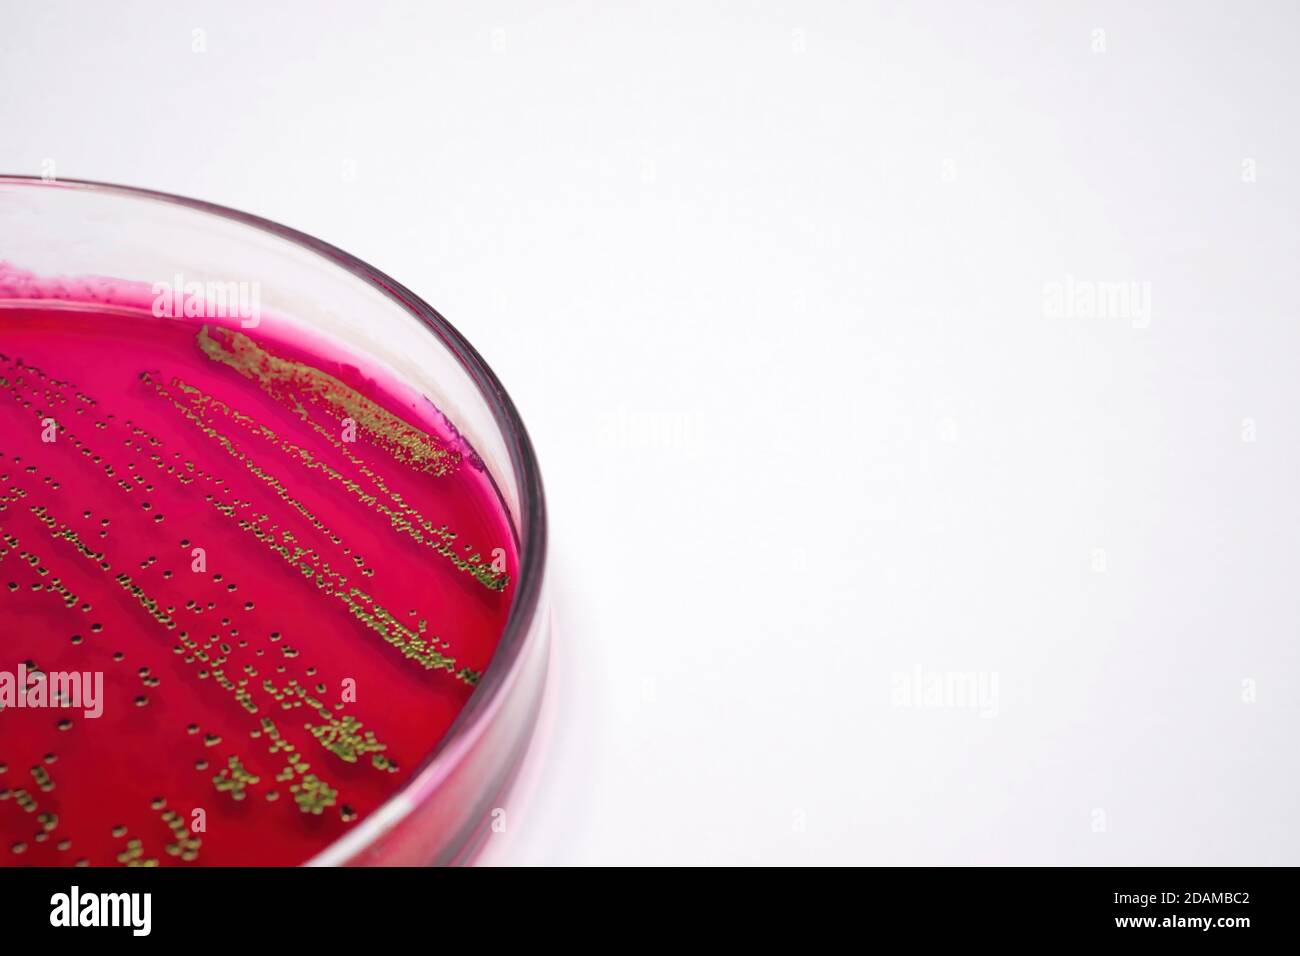 Bacterias Escherichia coli en medios selectivos de agar sangre. Foto de stock